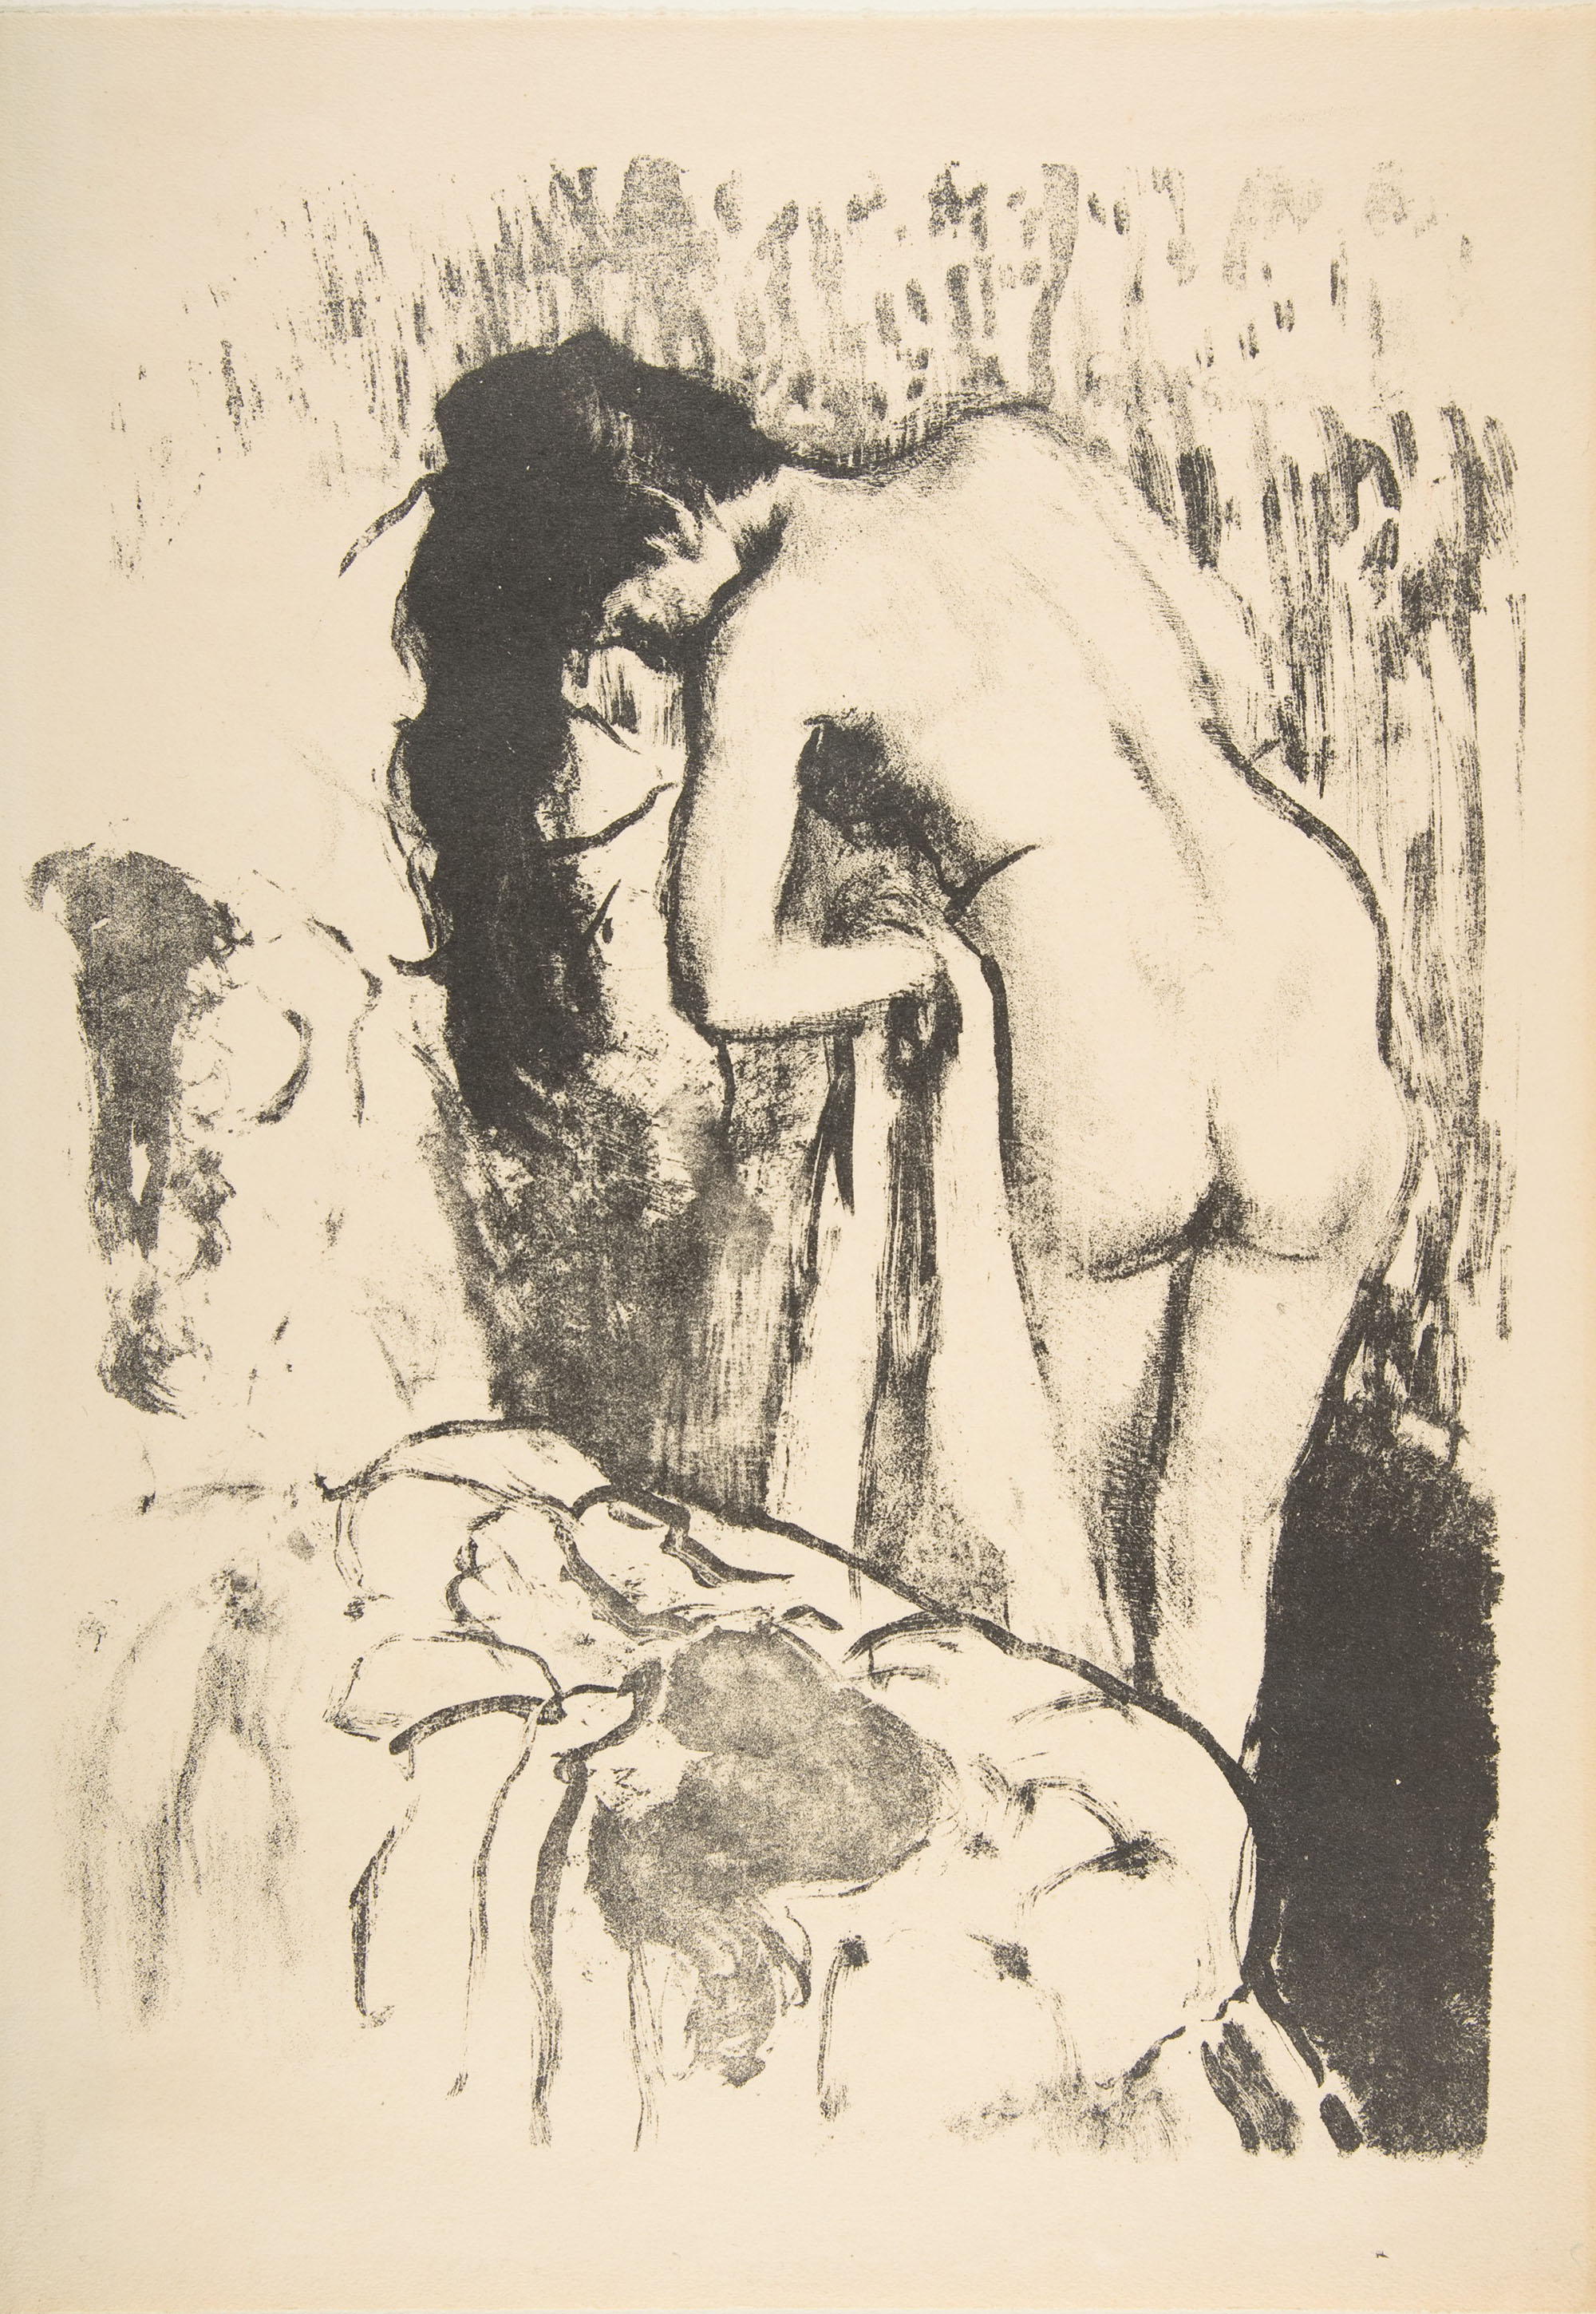 Эдгар Дега. "Женщина, вытирающаяся полотенцем". 1891-1892.